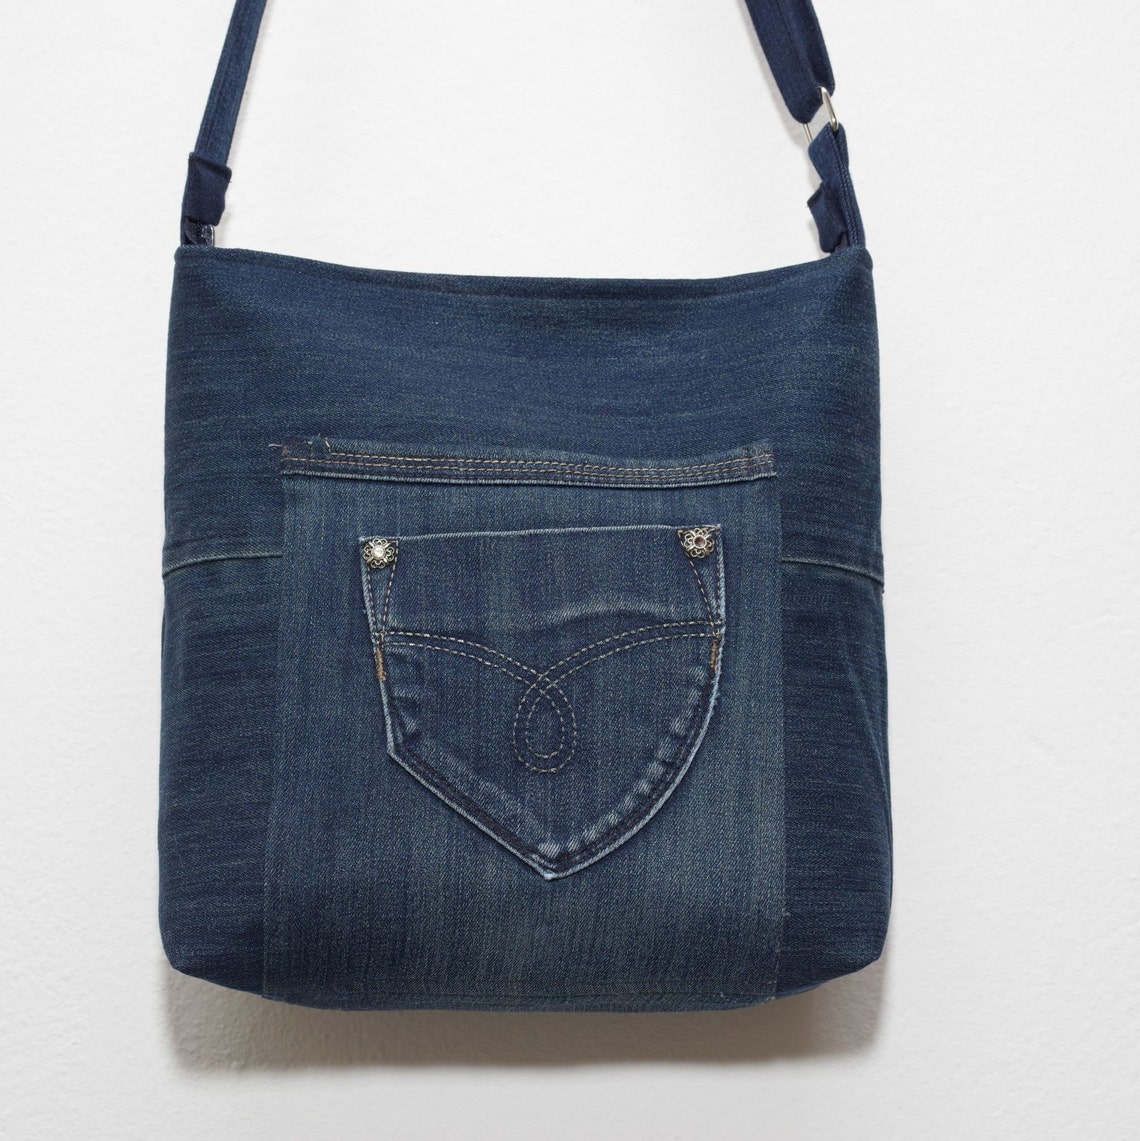 Jeans Bag Jeans Hobo Bag Upcycled Jeans Bag Eco Bag Denim - Etsy